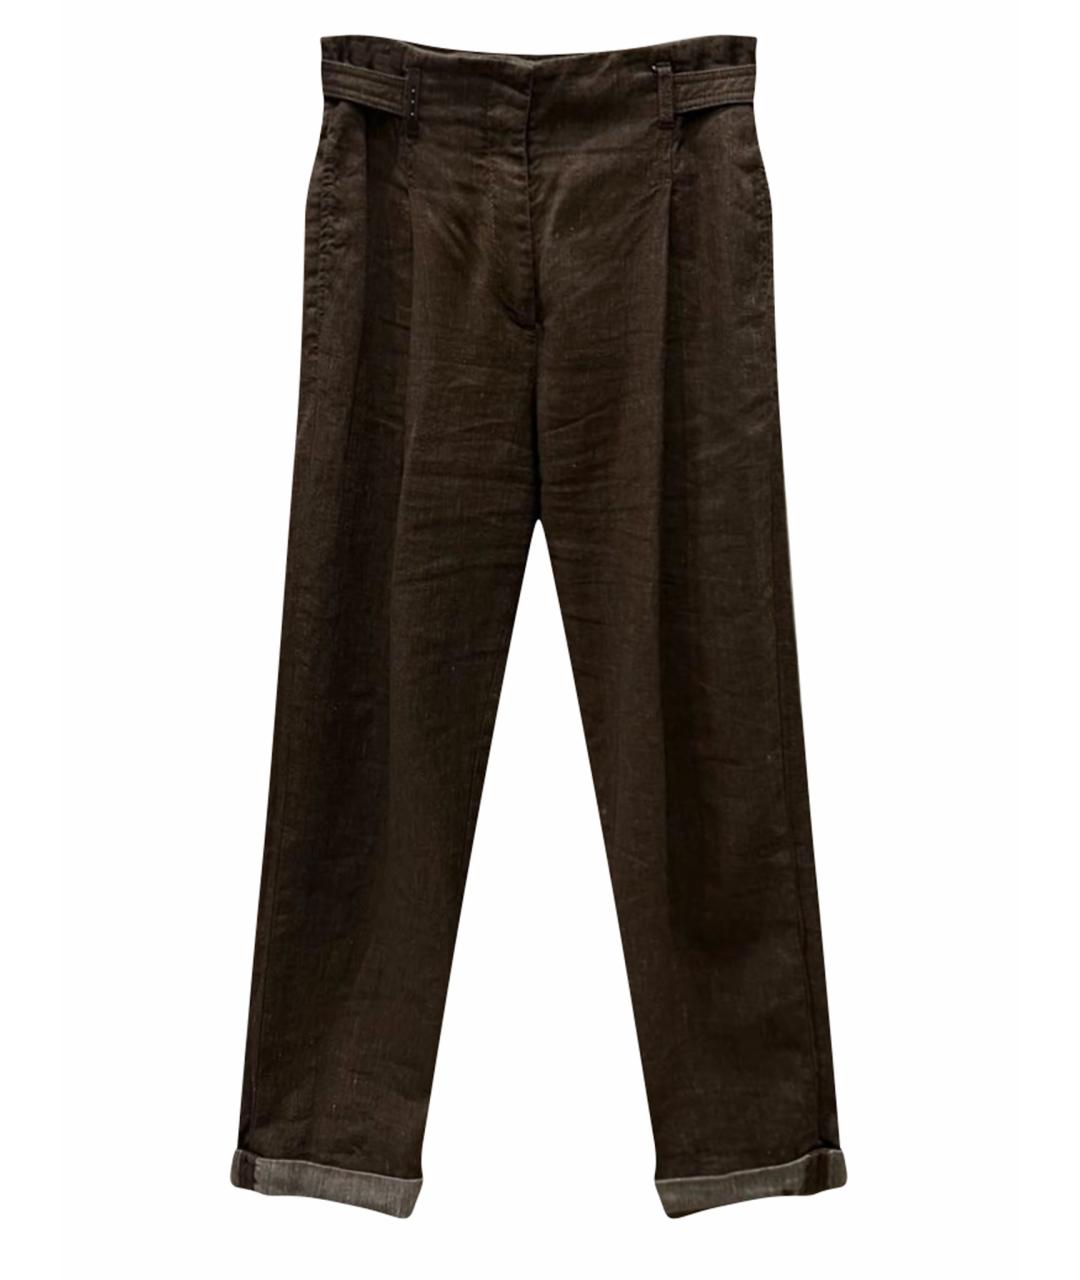 PESERICO Коричневые льняные брюки широкие, фото 1